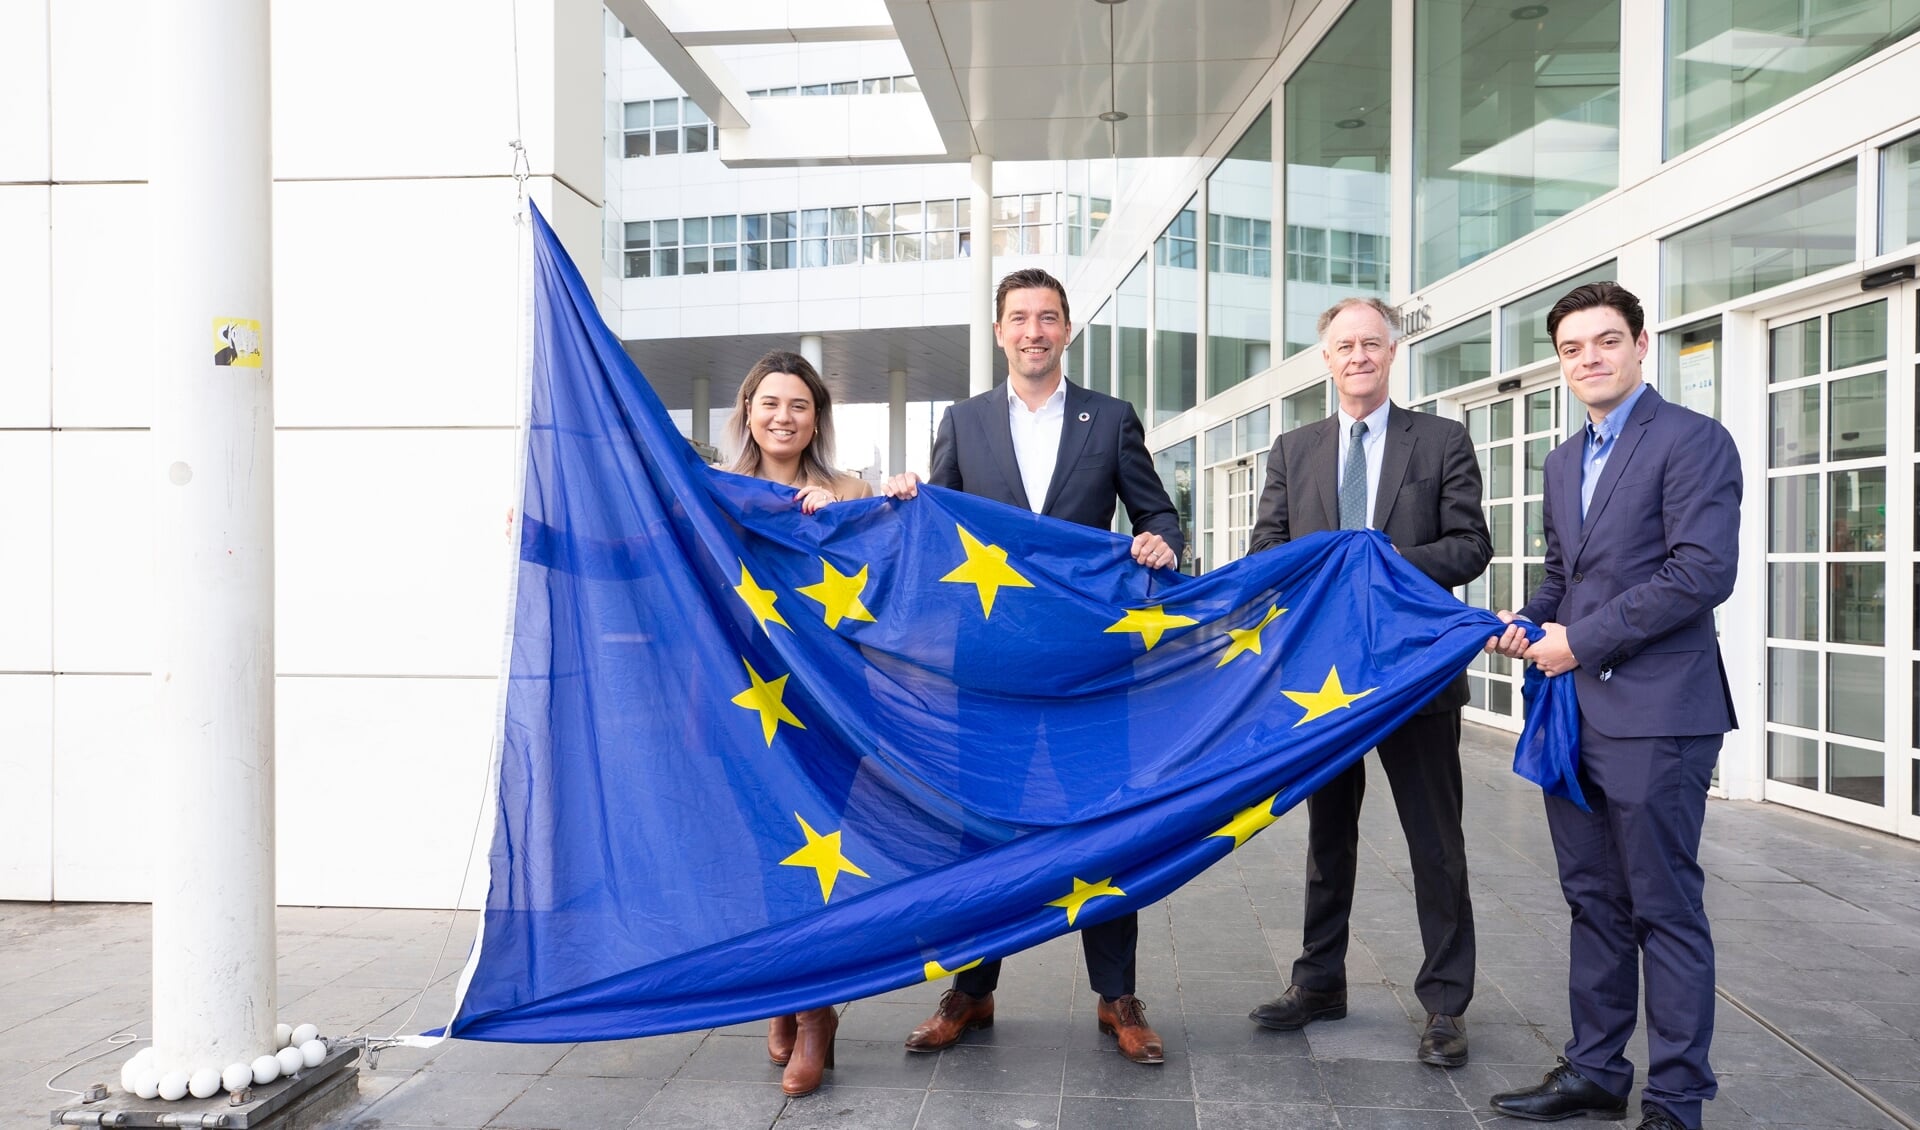 In Den Haag worden op de Dag van Europa op verschillende plekken in de stad de Europese vlag gehesen, onder andere bij de Hofvijver. 